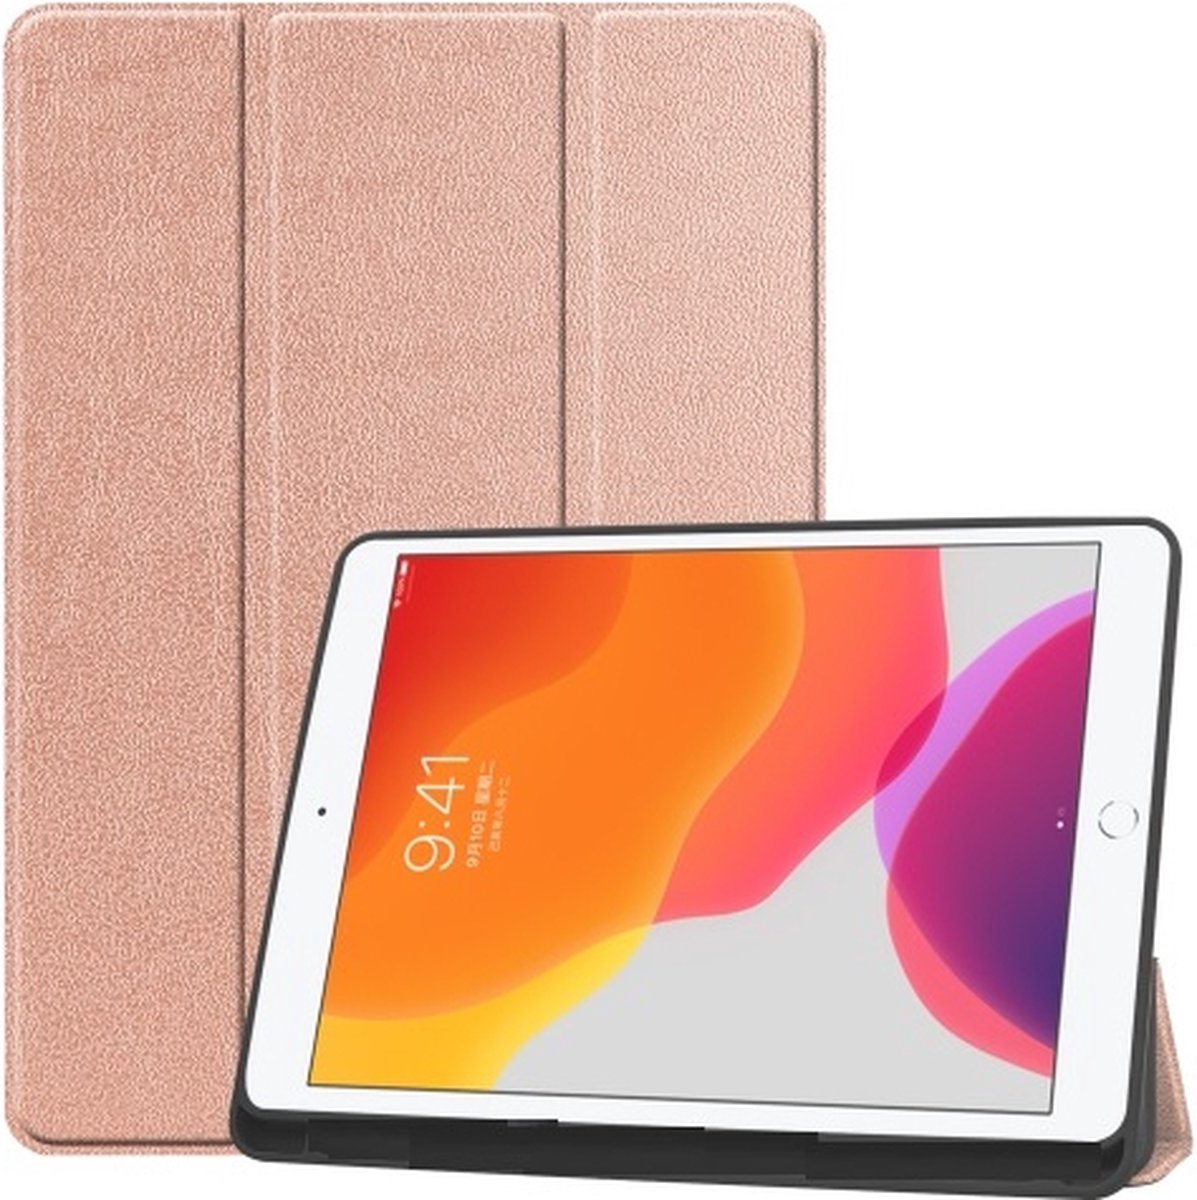 Apple iPad 10.2 magnetische Wallet case /flipcase stand/ hardcover achterzijde/ smart cover kleur Goud